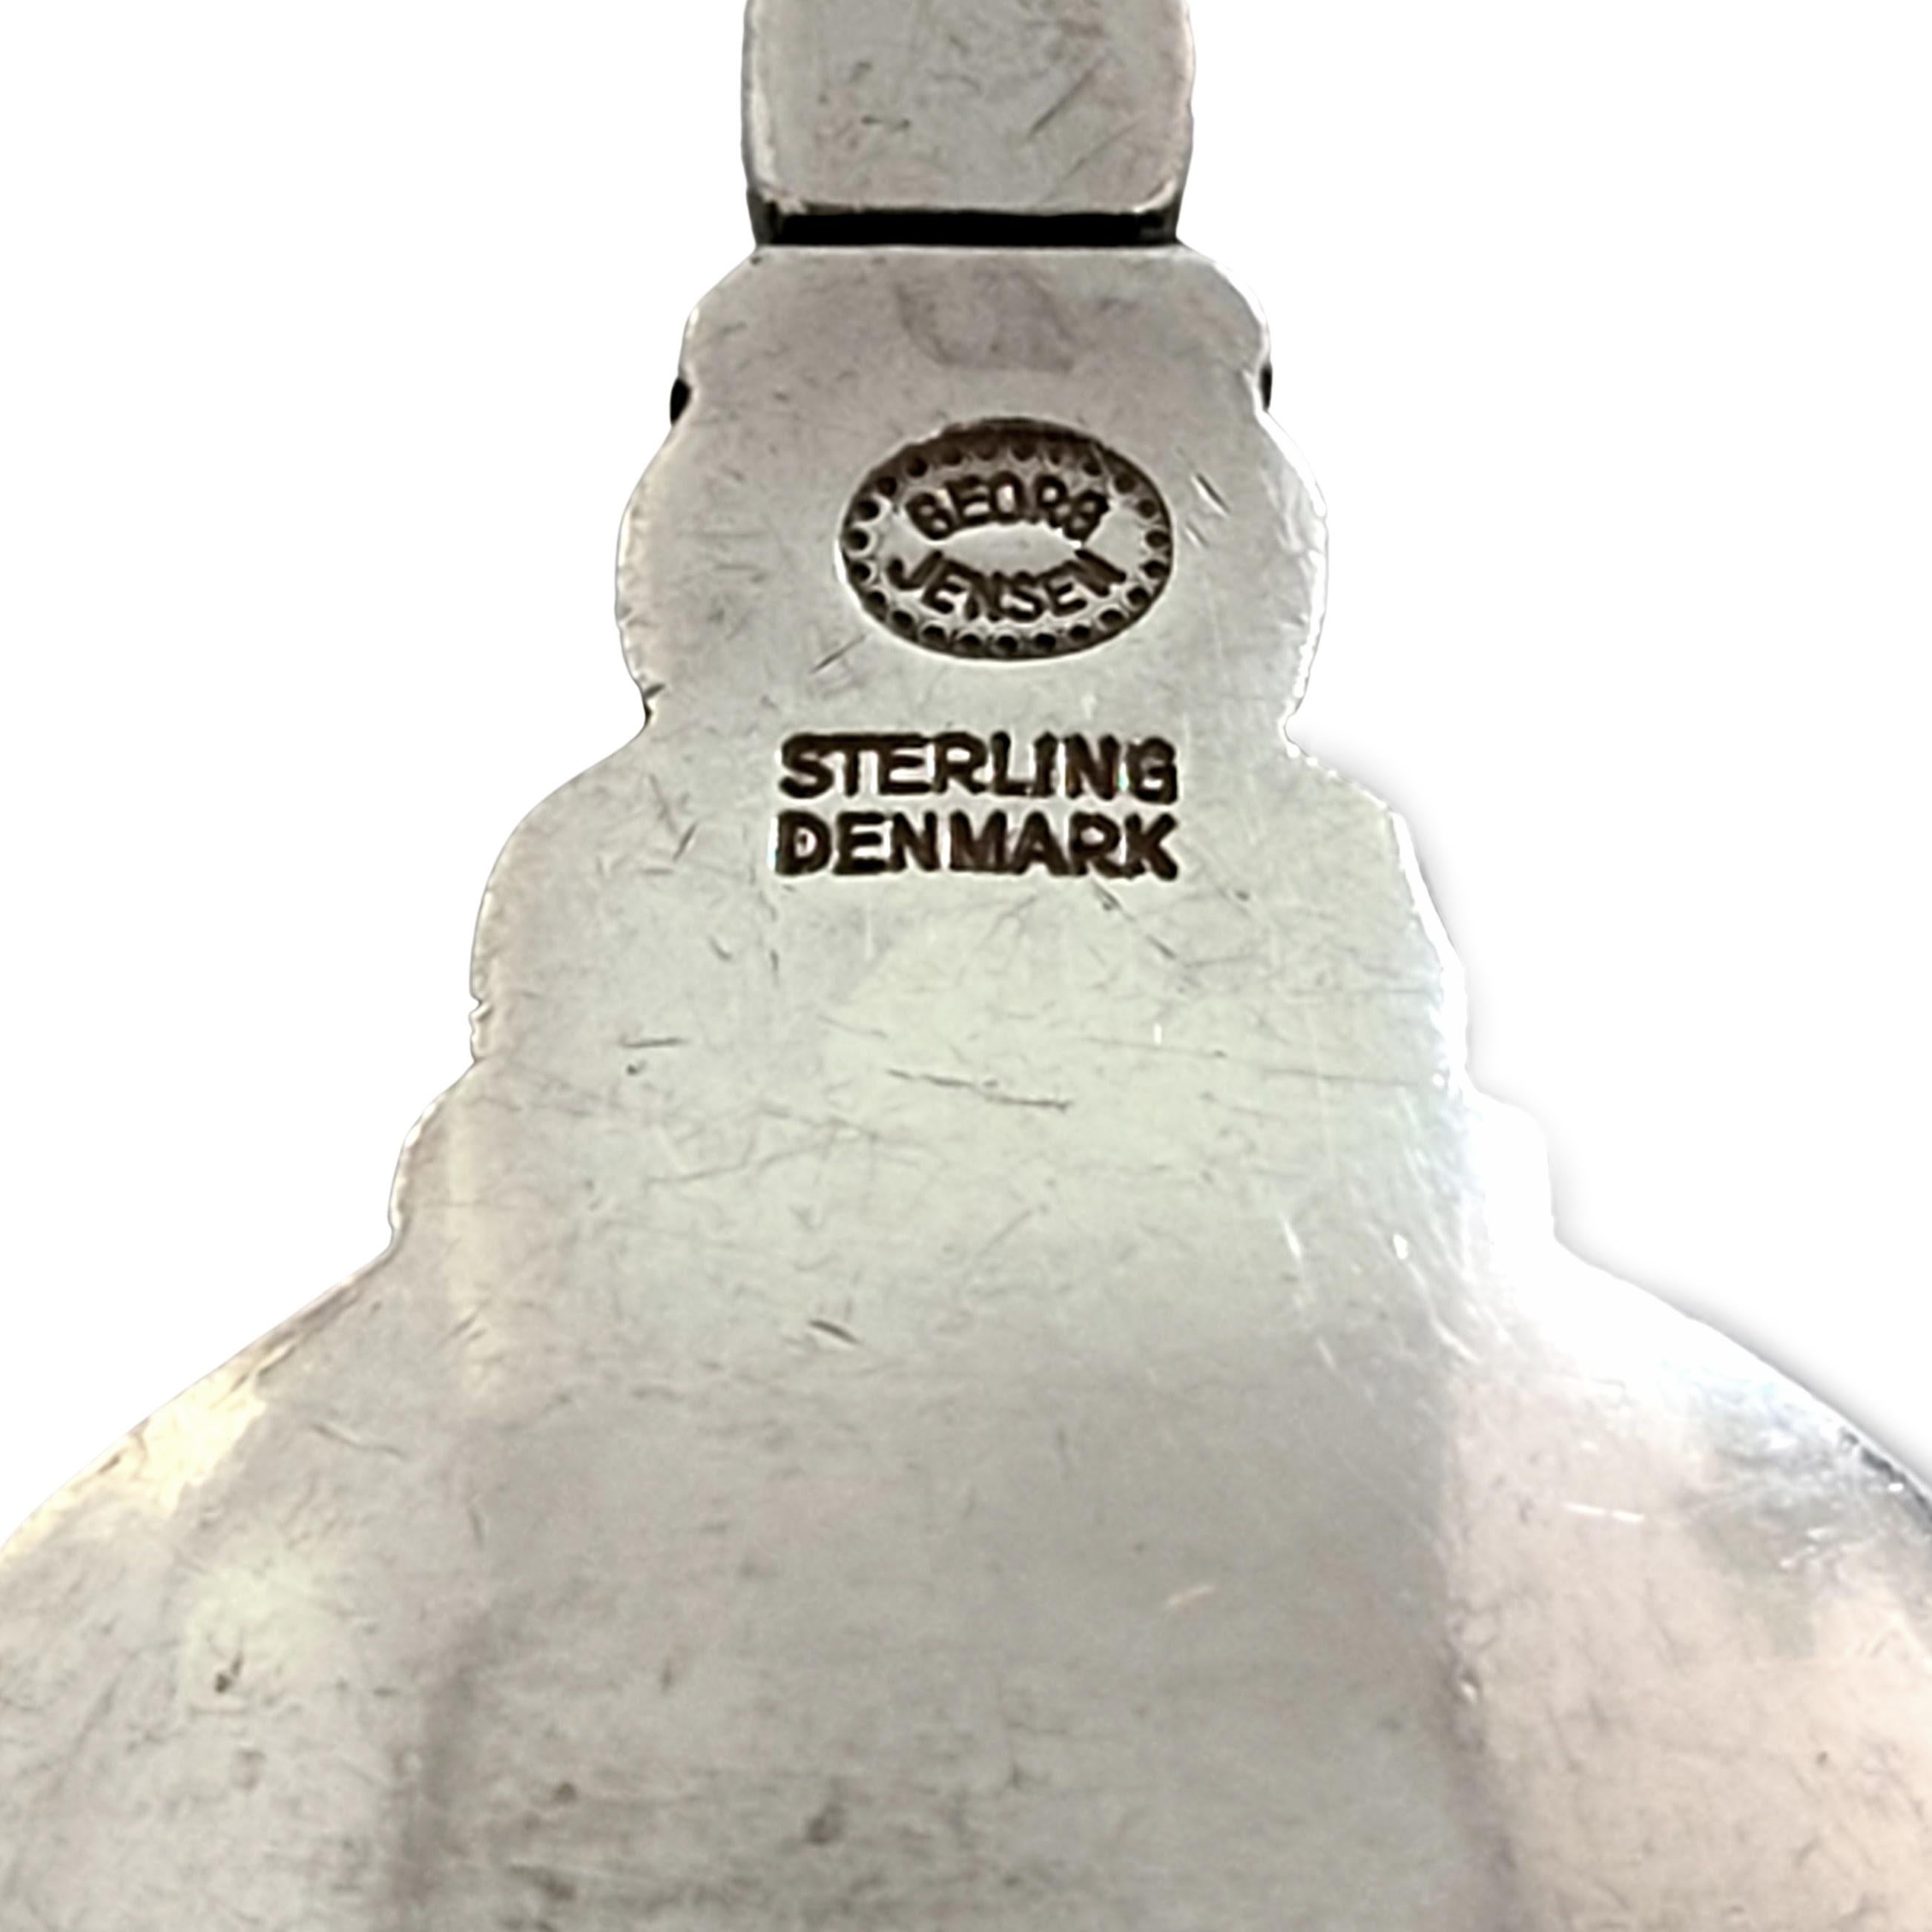 Georg Jensen Denmark Acorn Sterling Silver Caviar Shovel For Sale 3